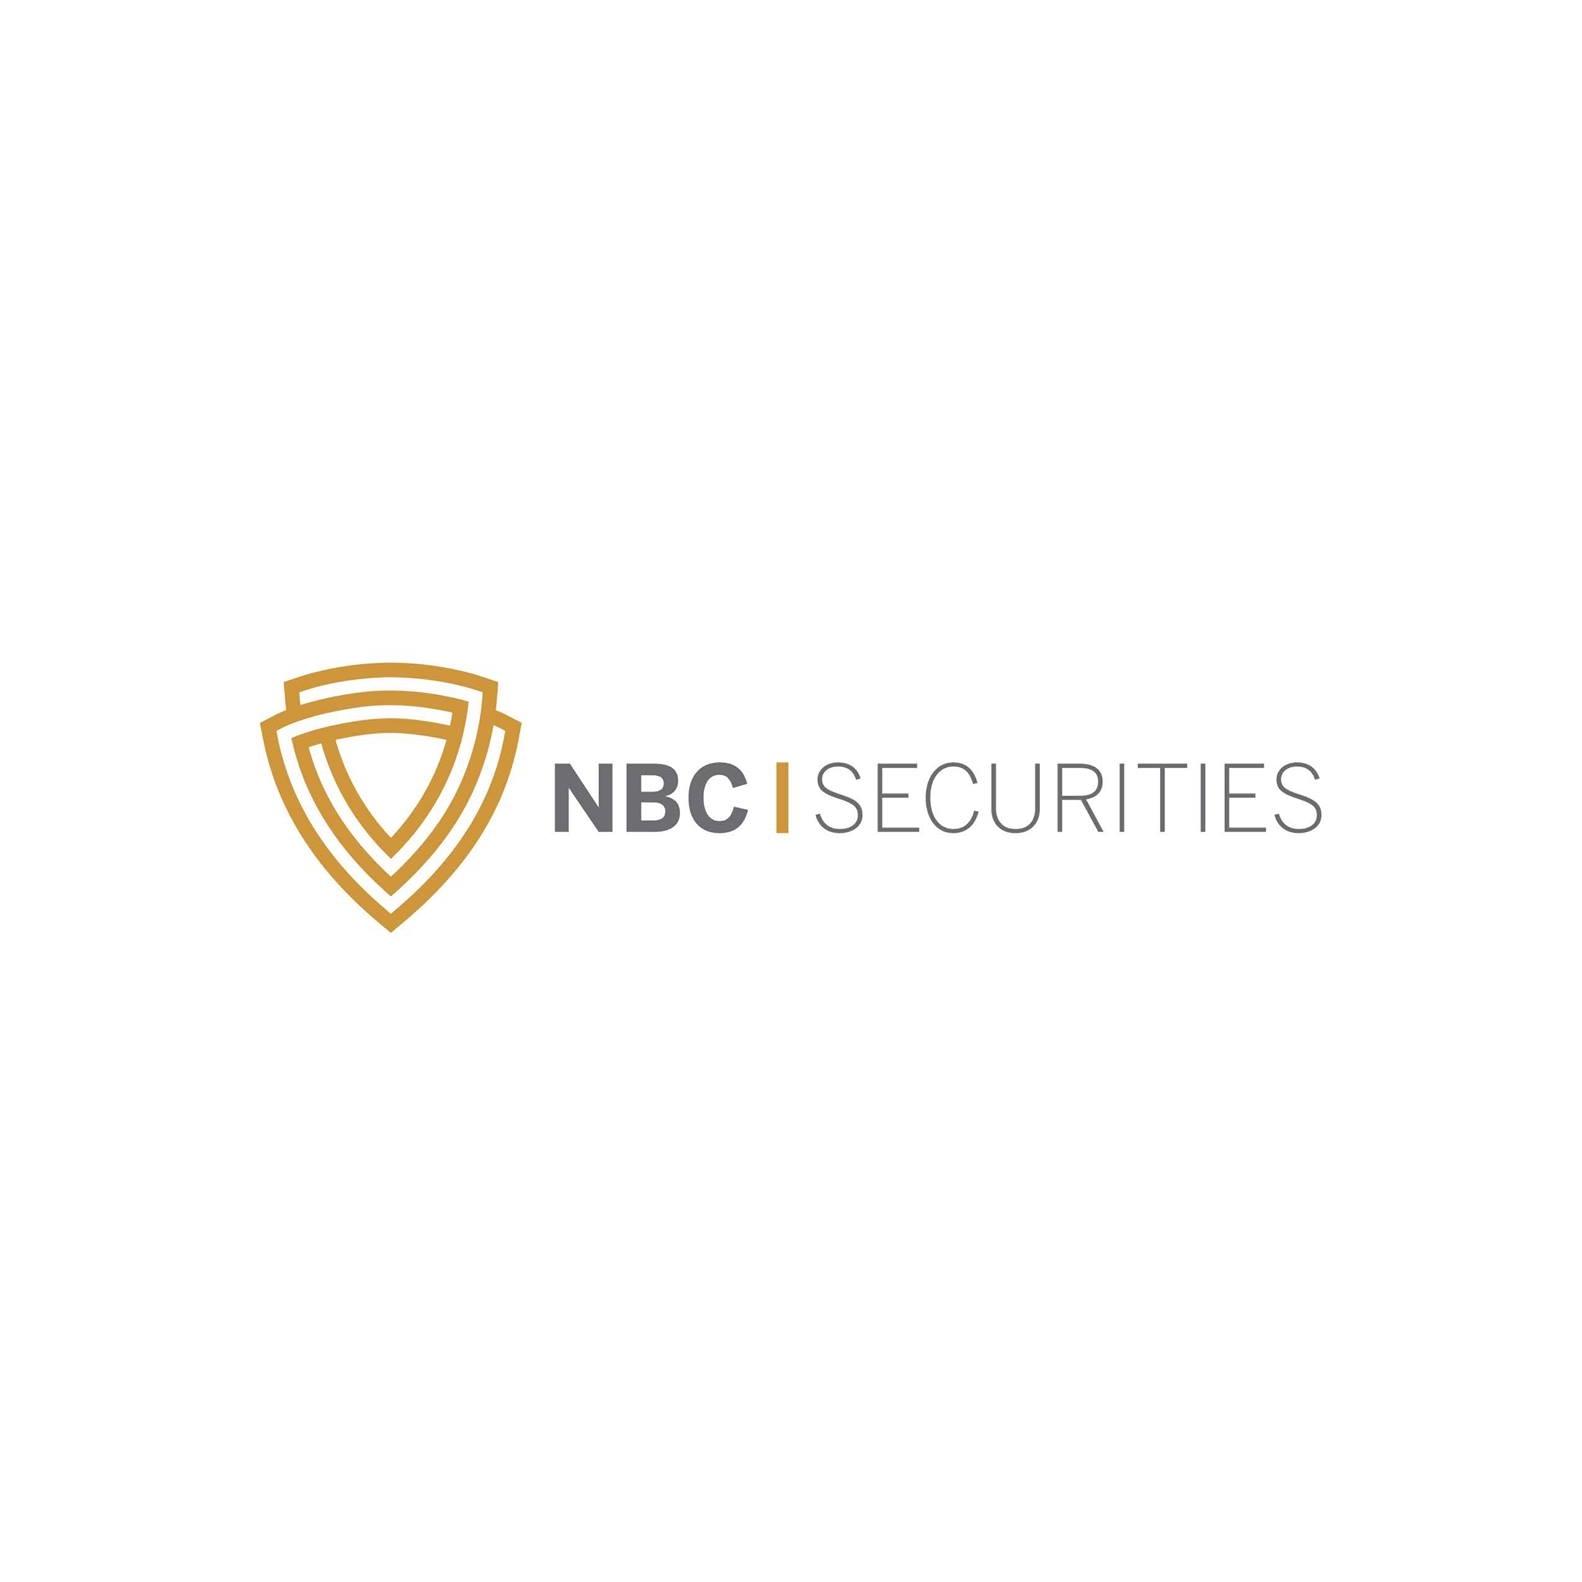 NBC Securities